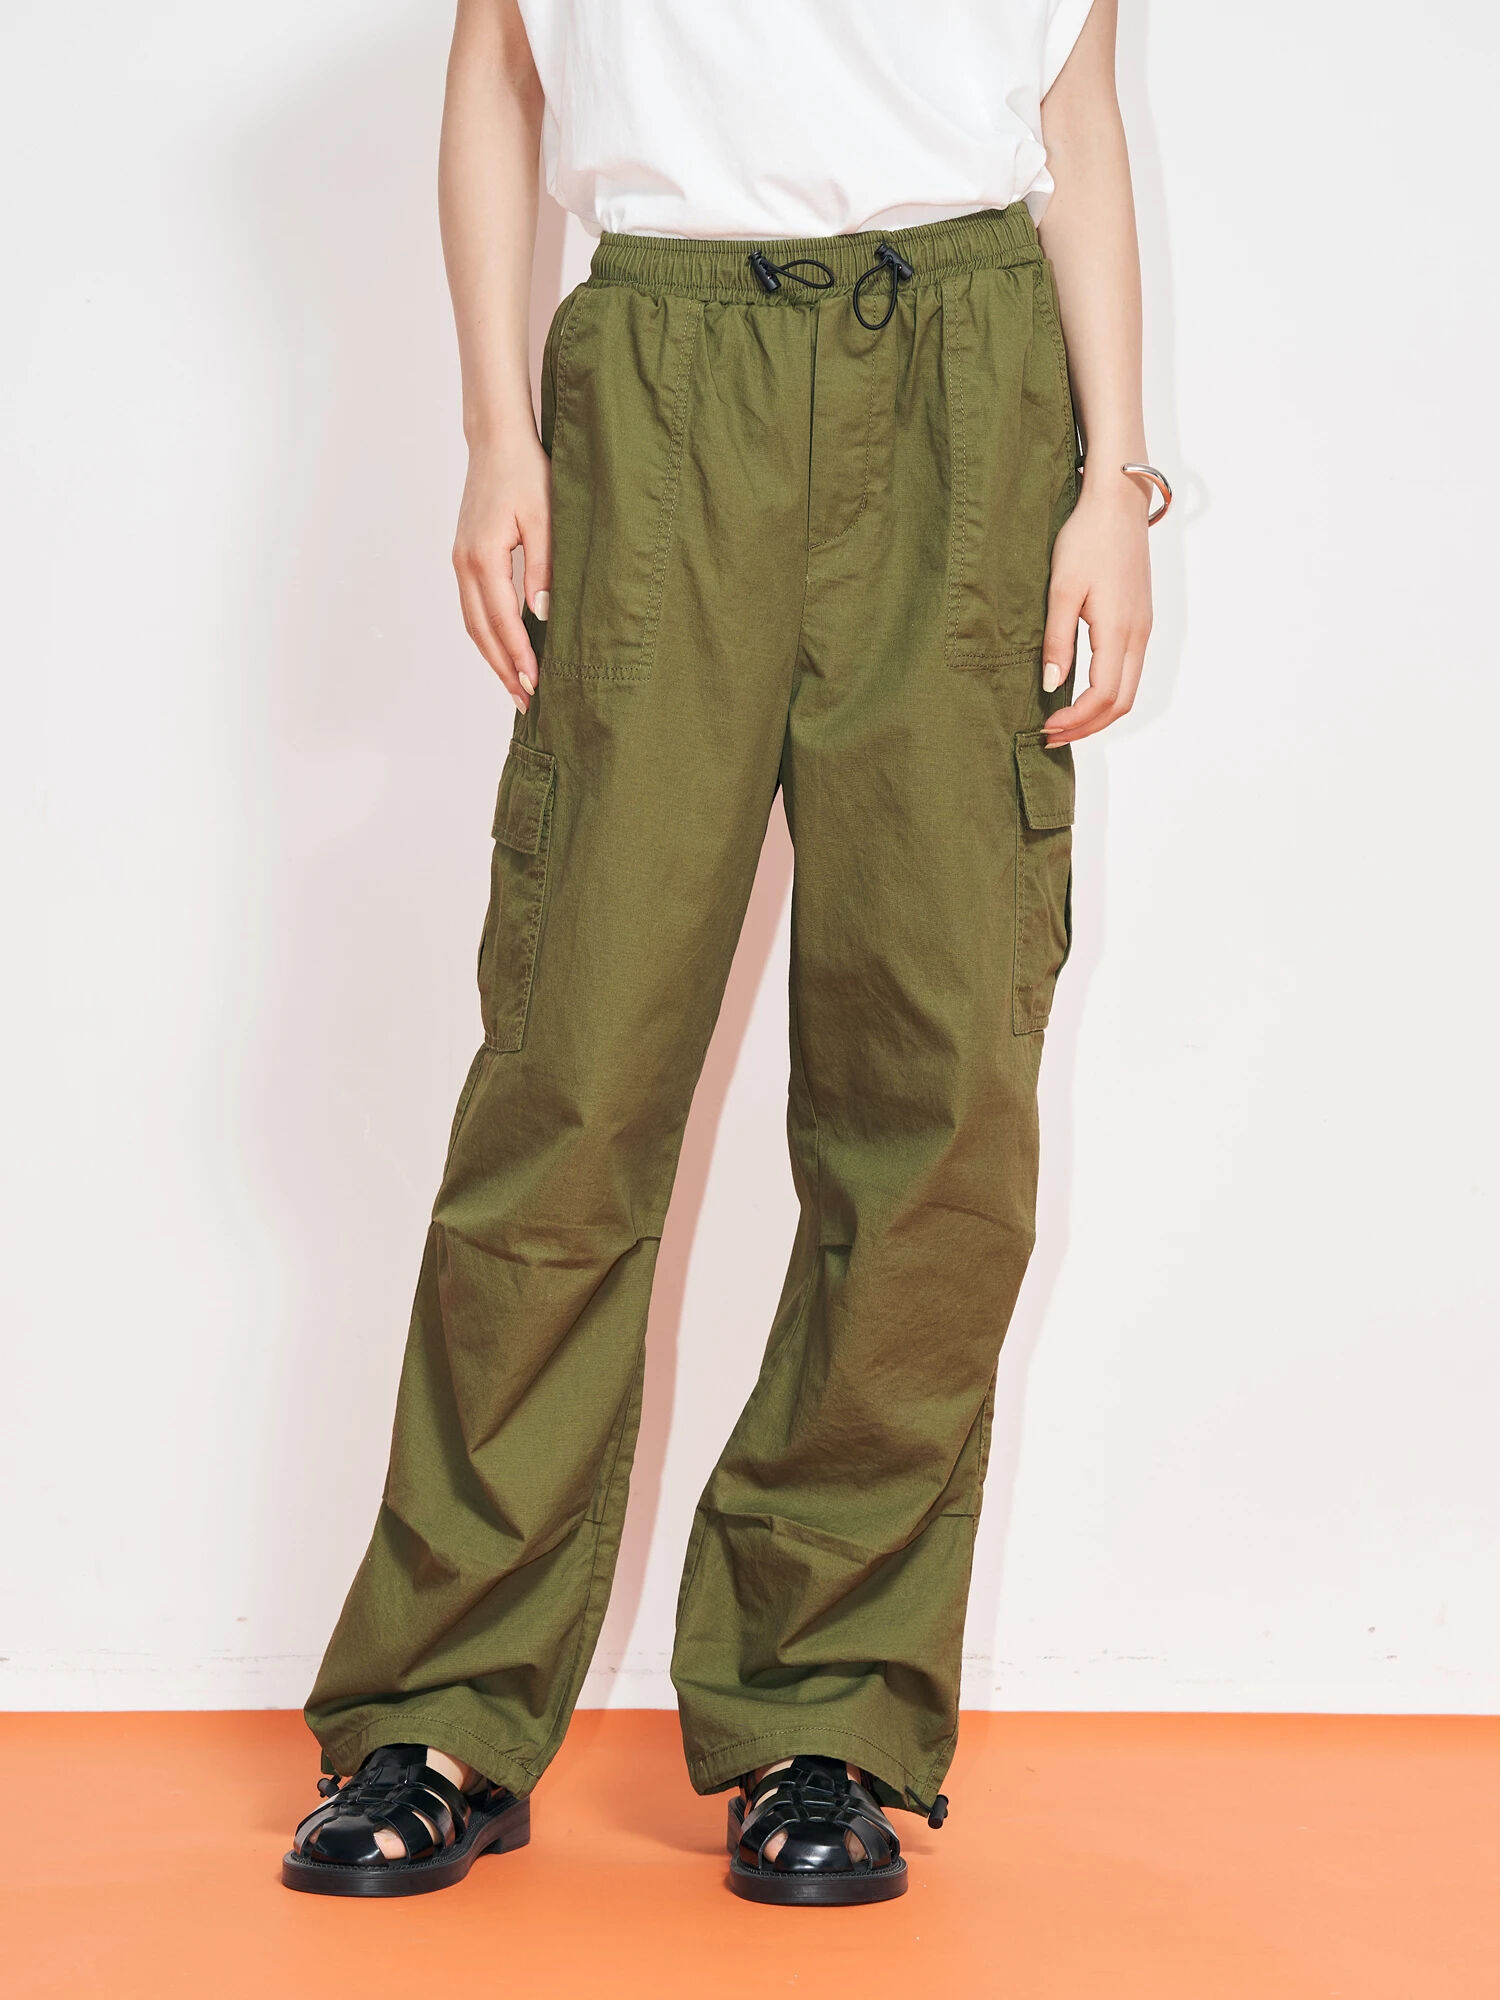 全3色/黒/赤/ベージュ 完売 RH Vintage Military Chino Cargo Pants